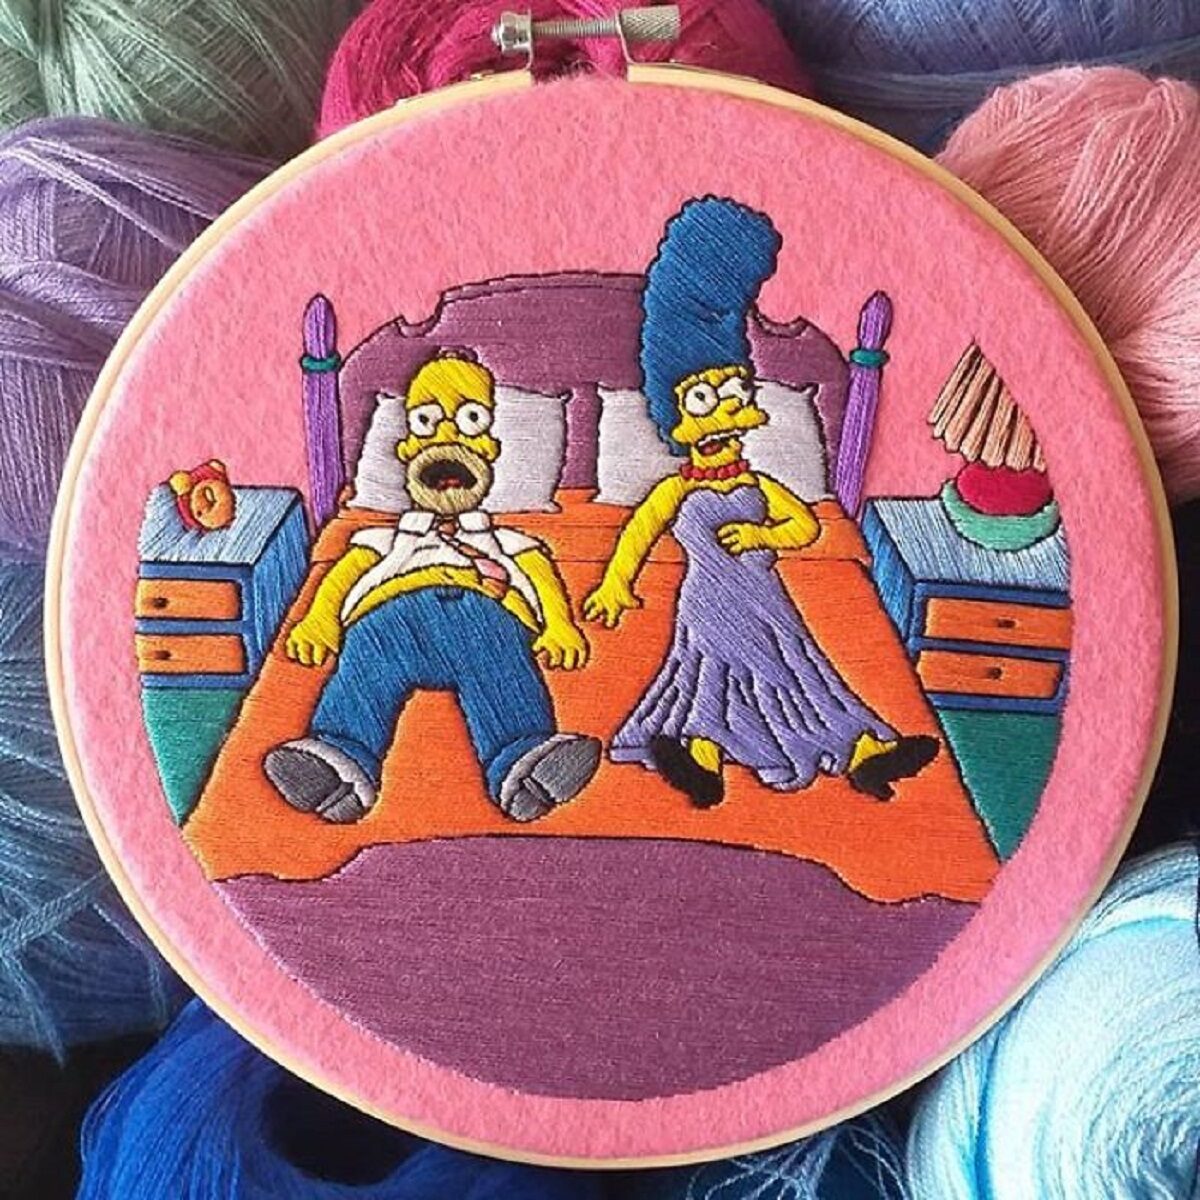 Artista Gabriela Martinez cria bordados de cenas de Os Simpsons 21